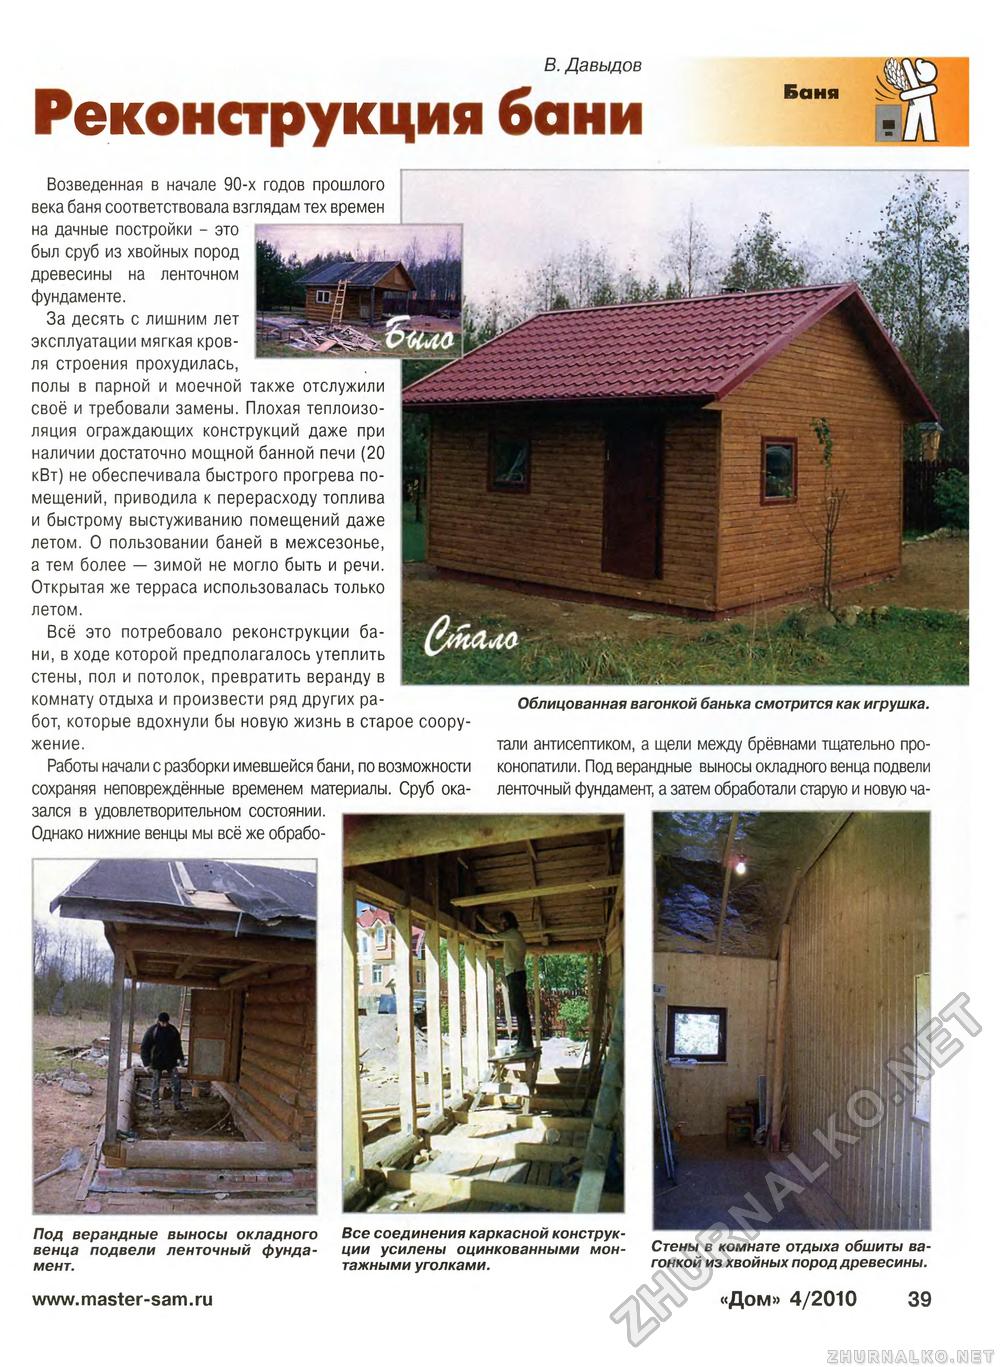 Дом 2010-04, страница 39